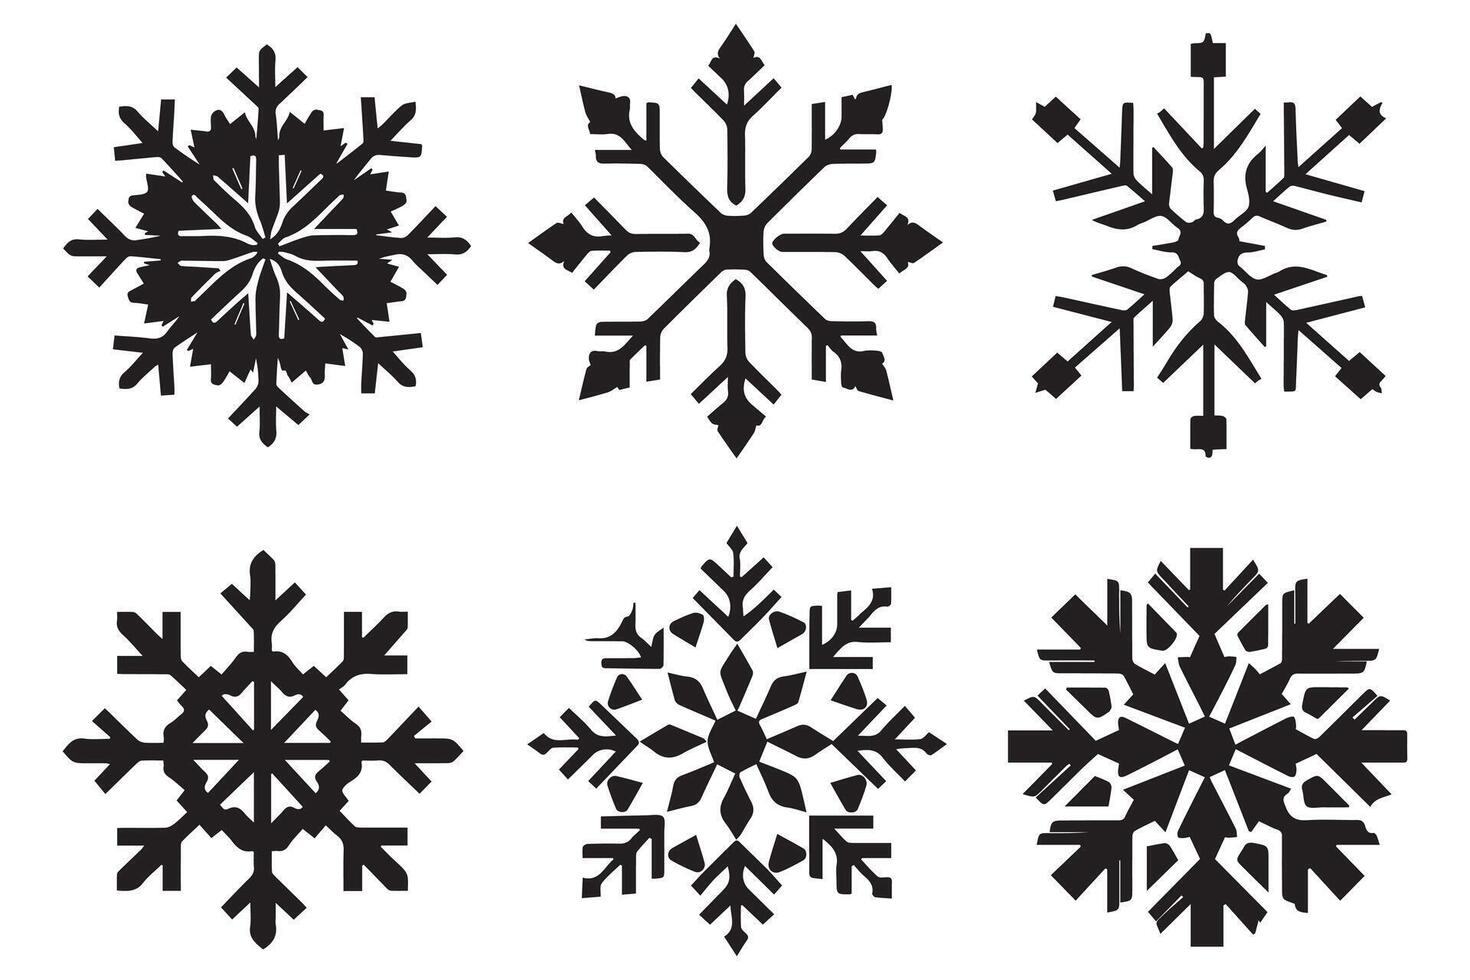 copo de nieve invierno negro silueta en blanco antecedentes vector